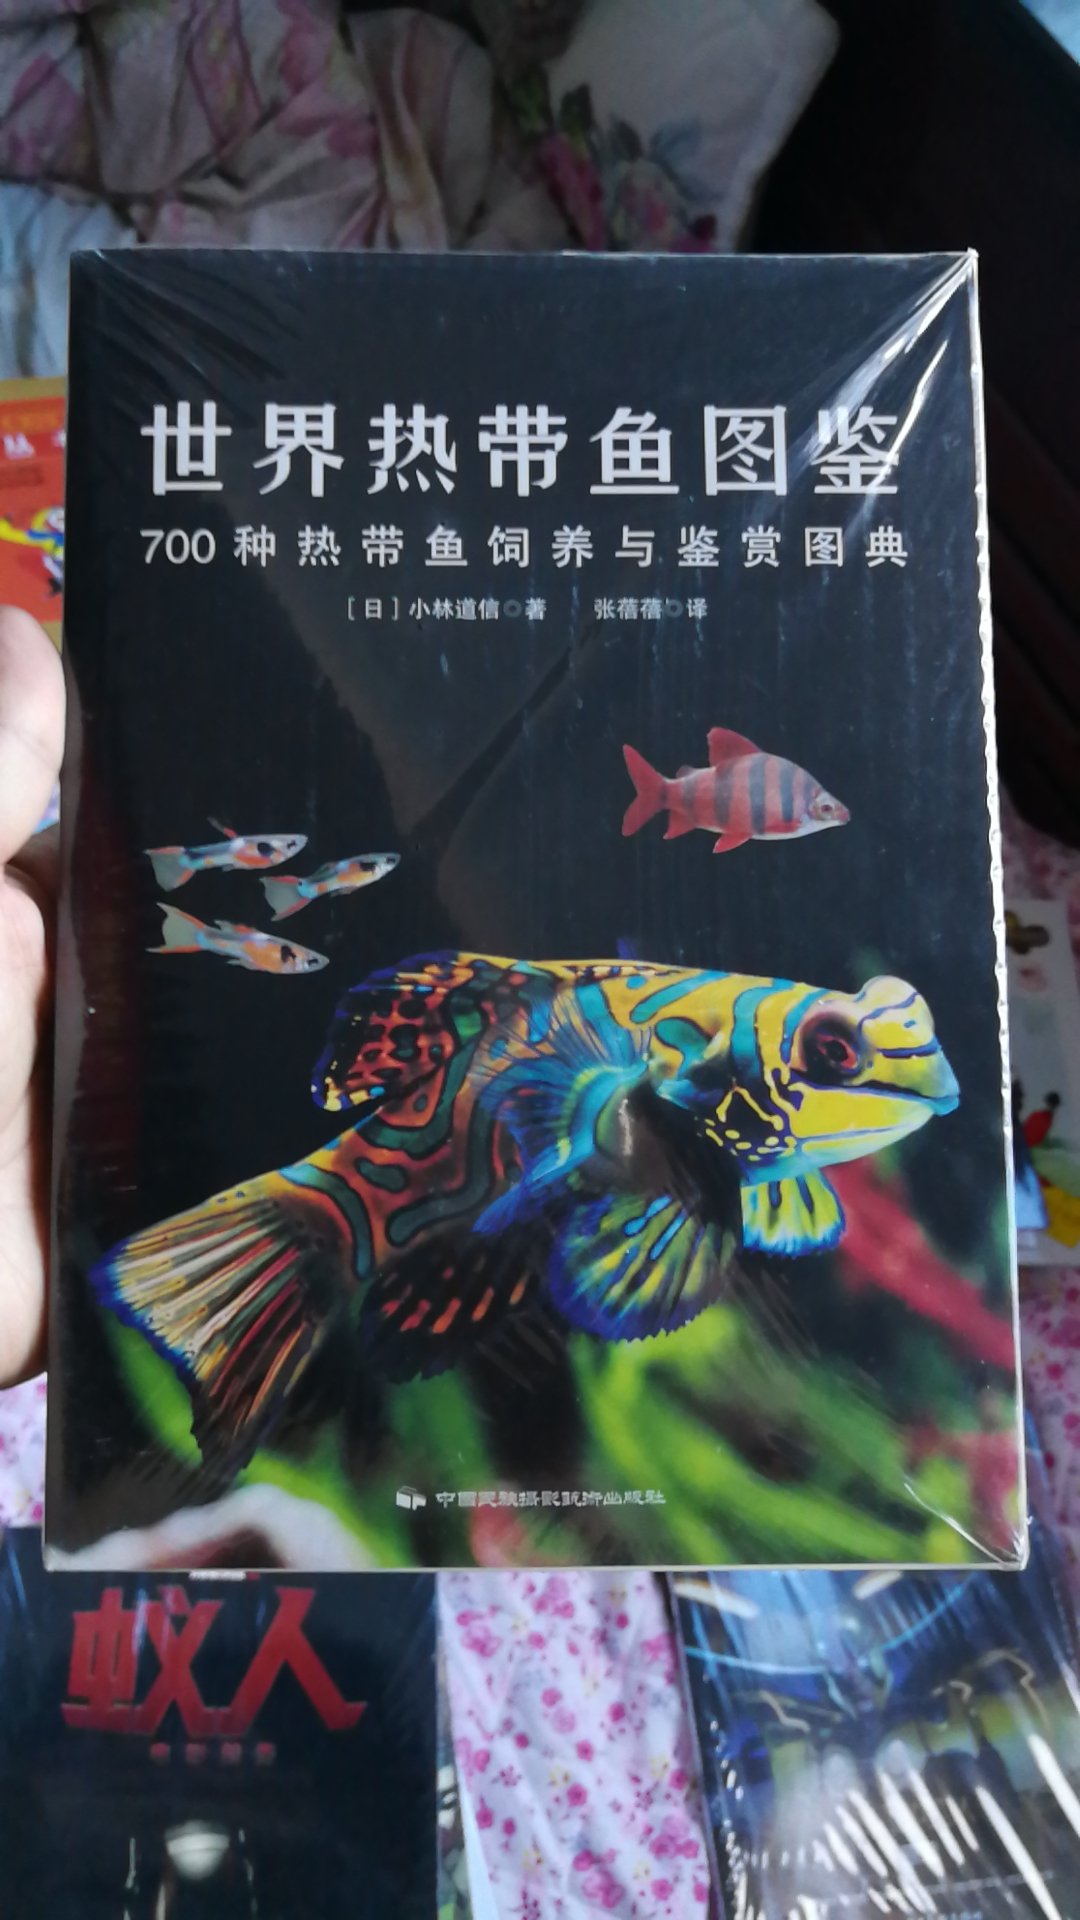 不错的一本科普图鉴，可以了解好多热带鱼，就是开本不大，以为是很大的一本书呢。